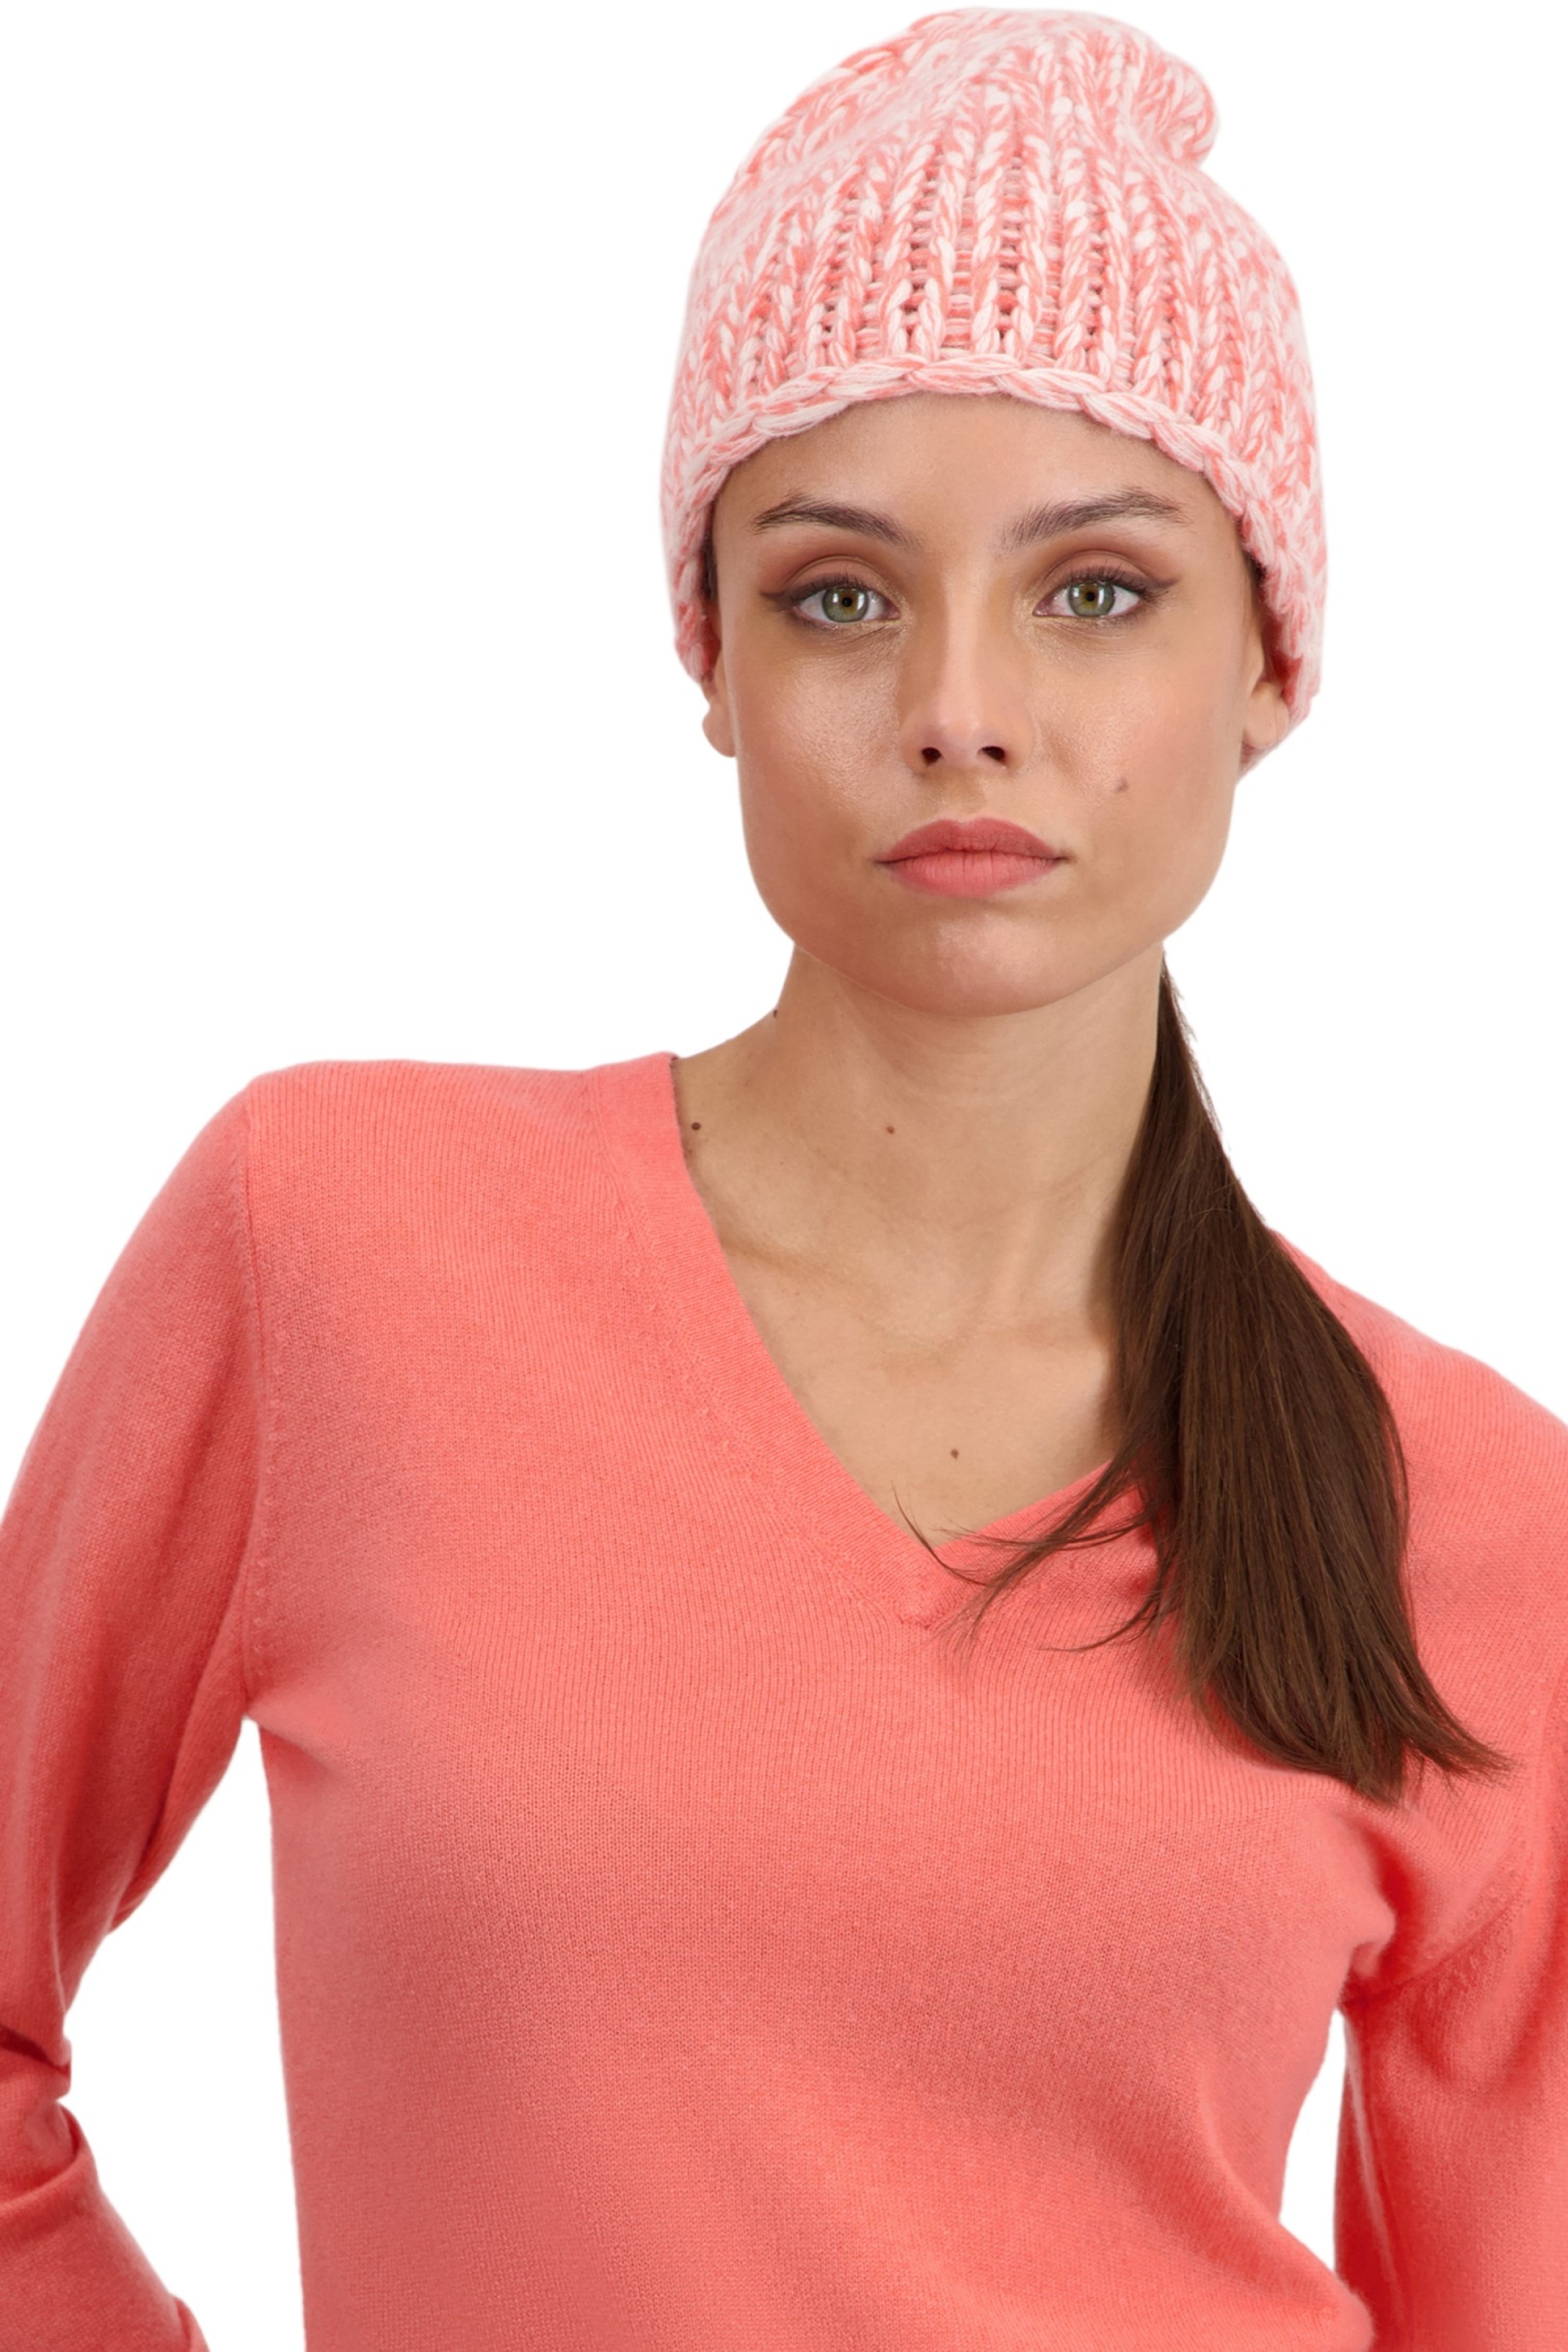 Cachemire pull femme tchoopy natural ecru rose pale peach 26 x 23 cm